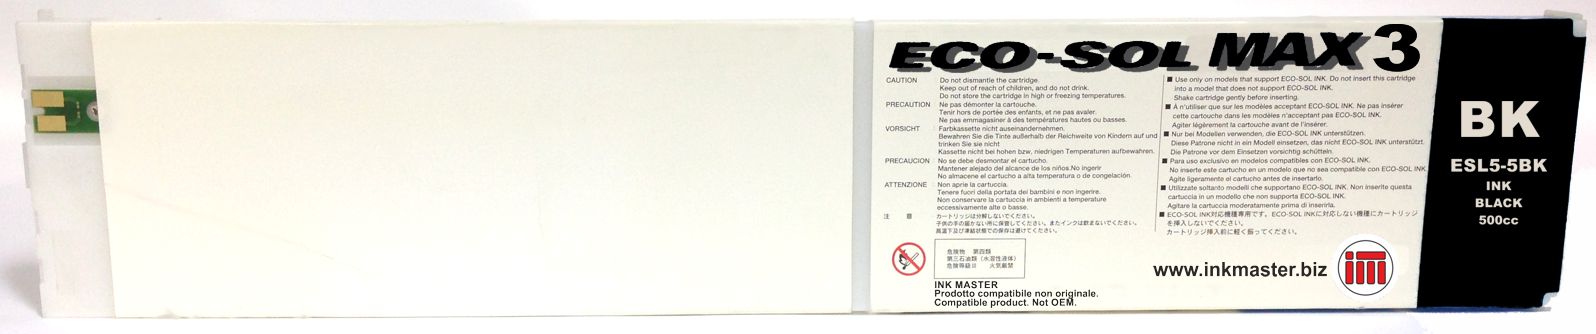 Cartuccia rigenerata ROLAND ECO-SOL MAX 3 BLACK per ROLAND BN-20 RF-640 SP-300i SP-540i VS-300i VS-540i VS-640i XR-640